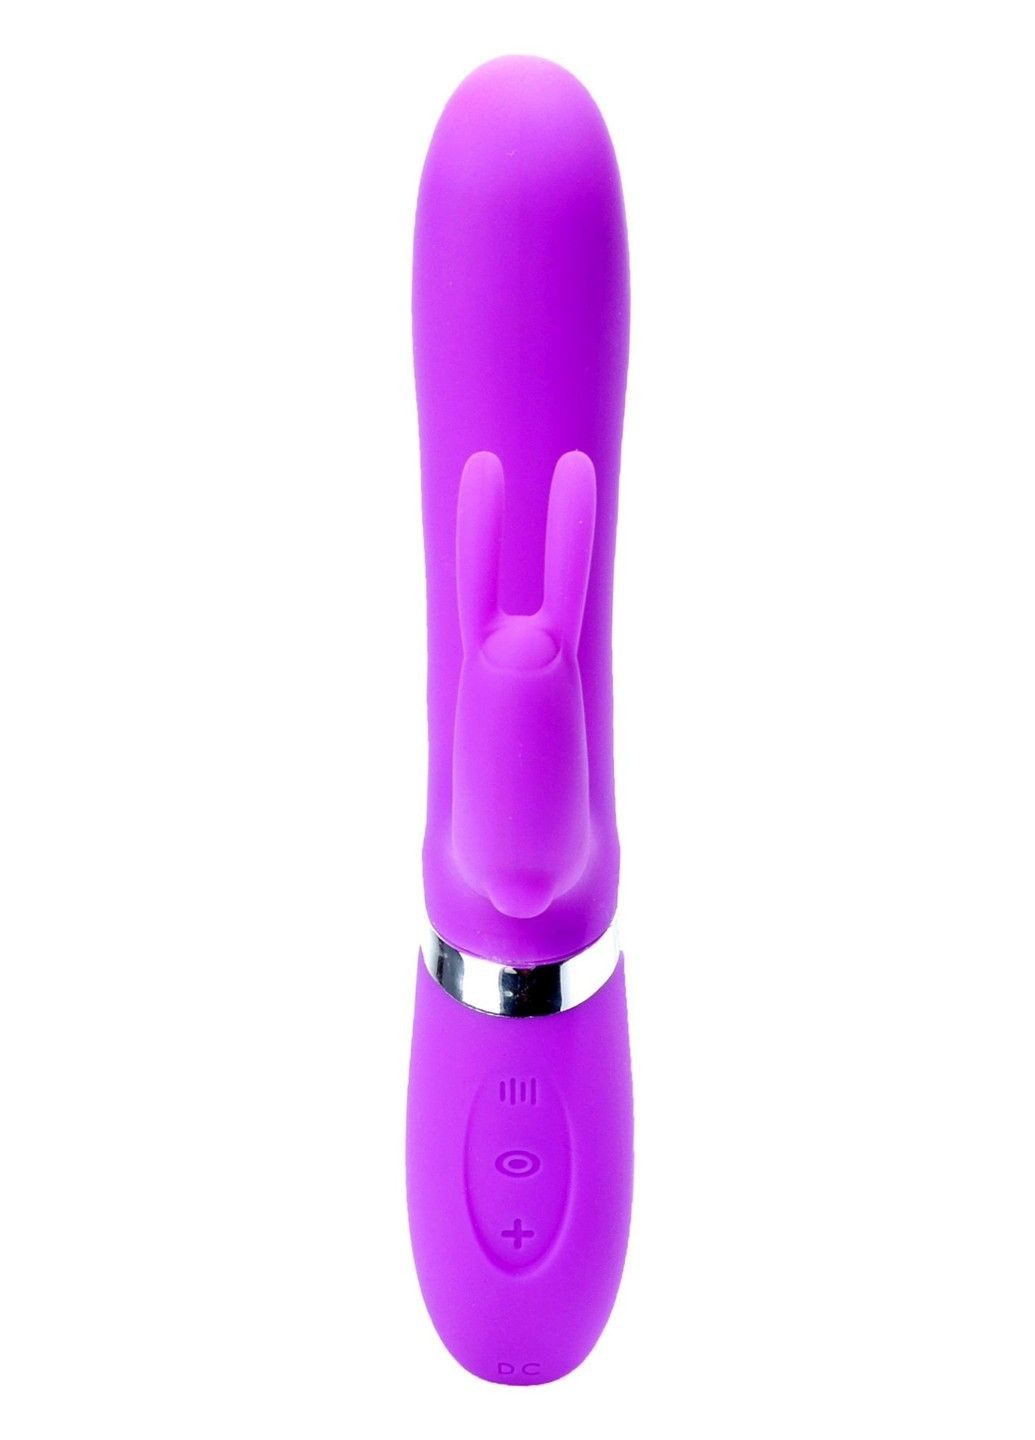 Вибратор-кролик CLARA Purple 12 функций вибрации и 6 пульсаций USB Boss Series (292012096)